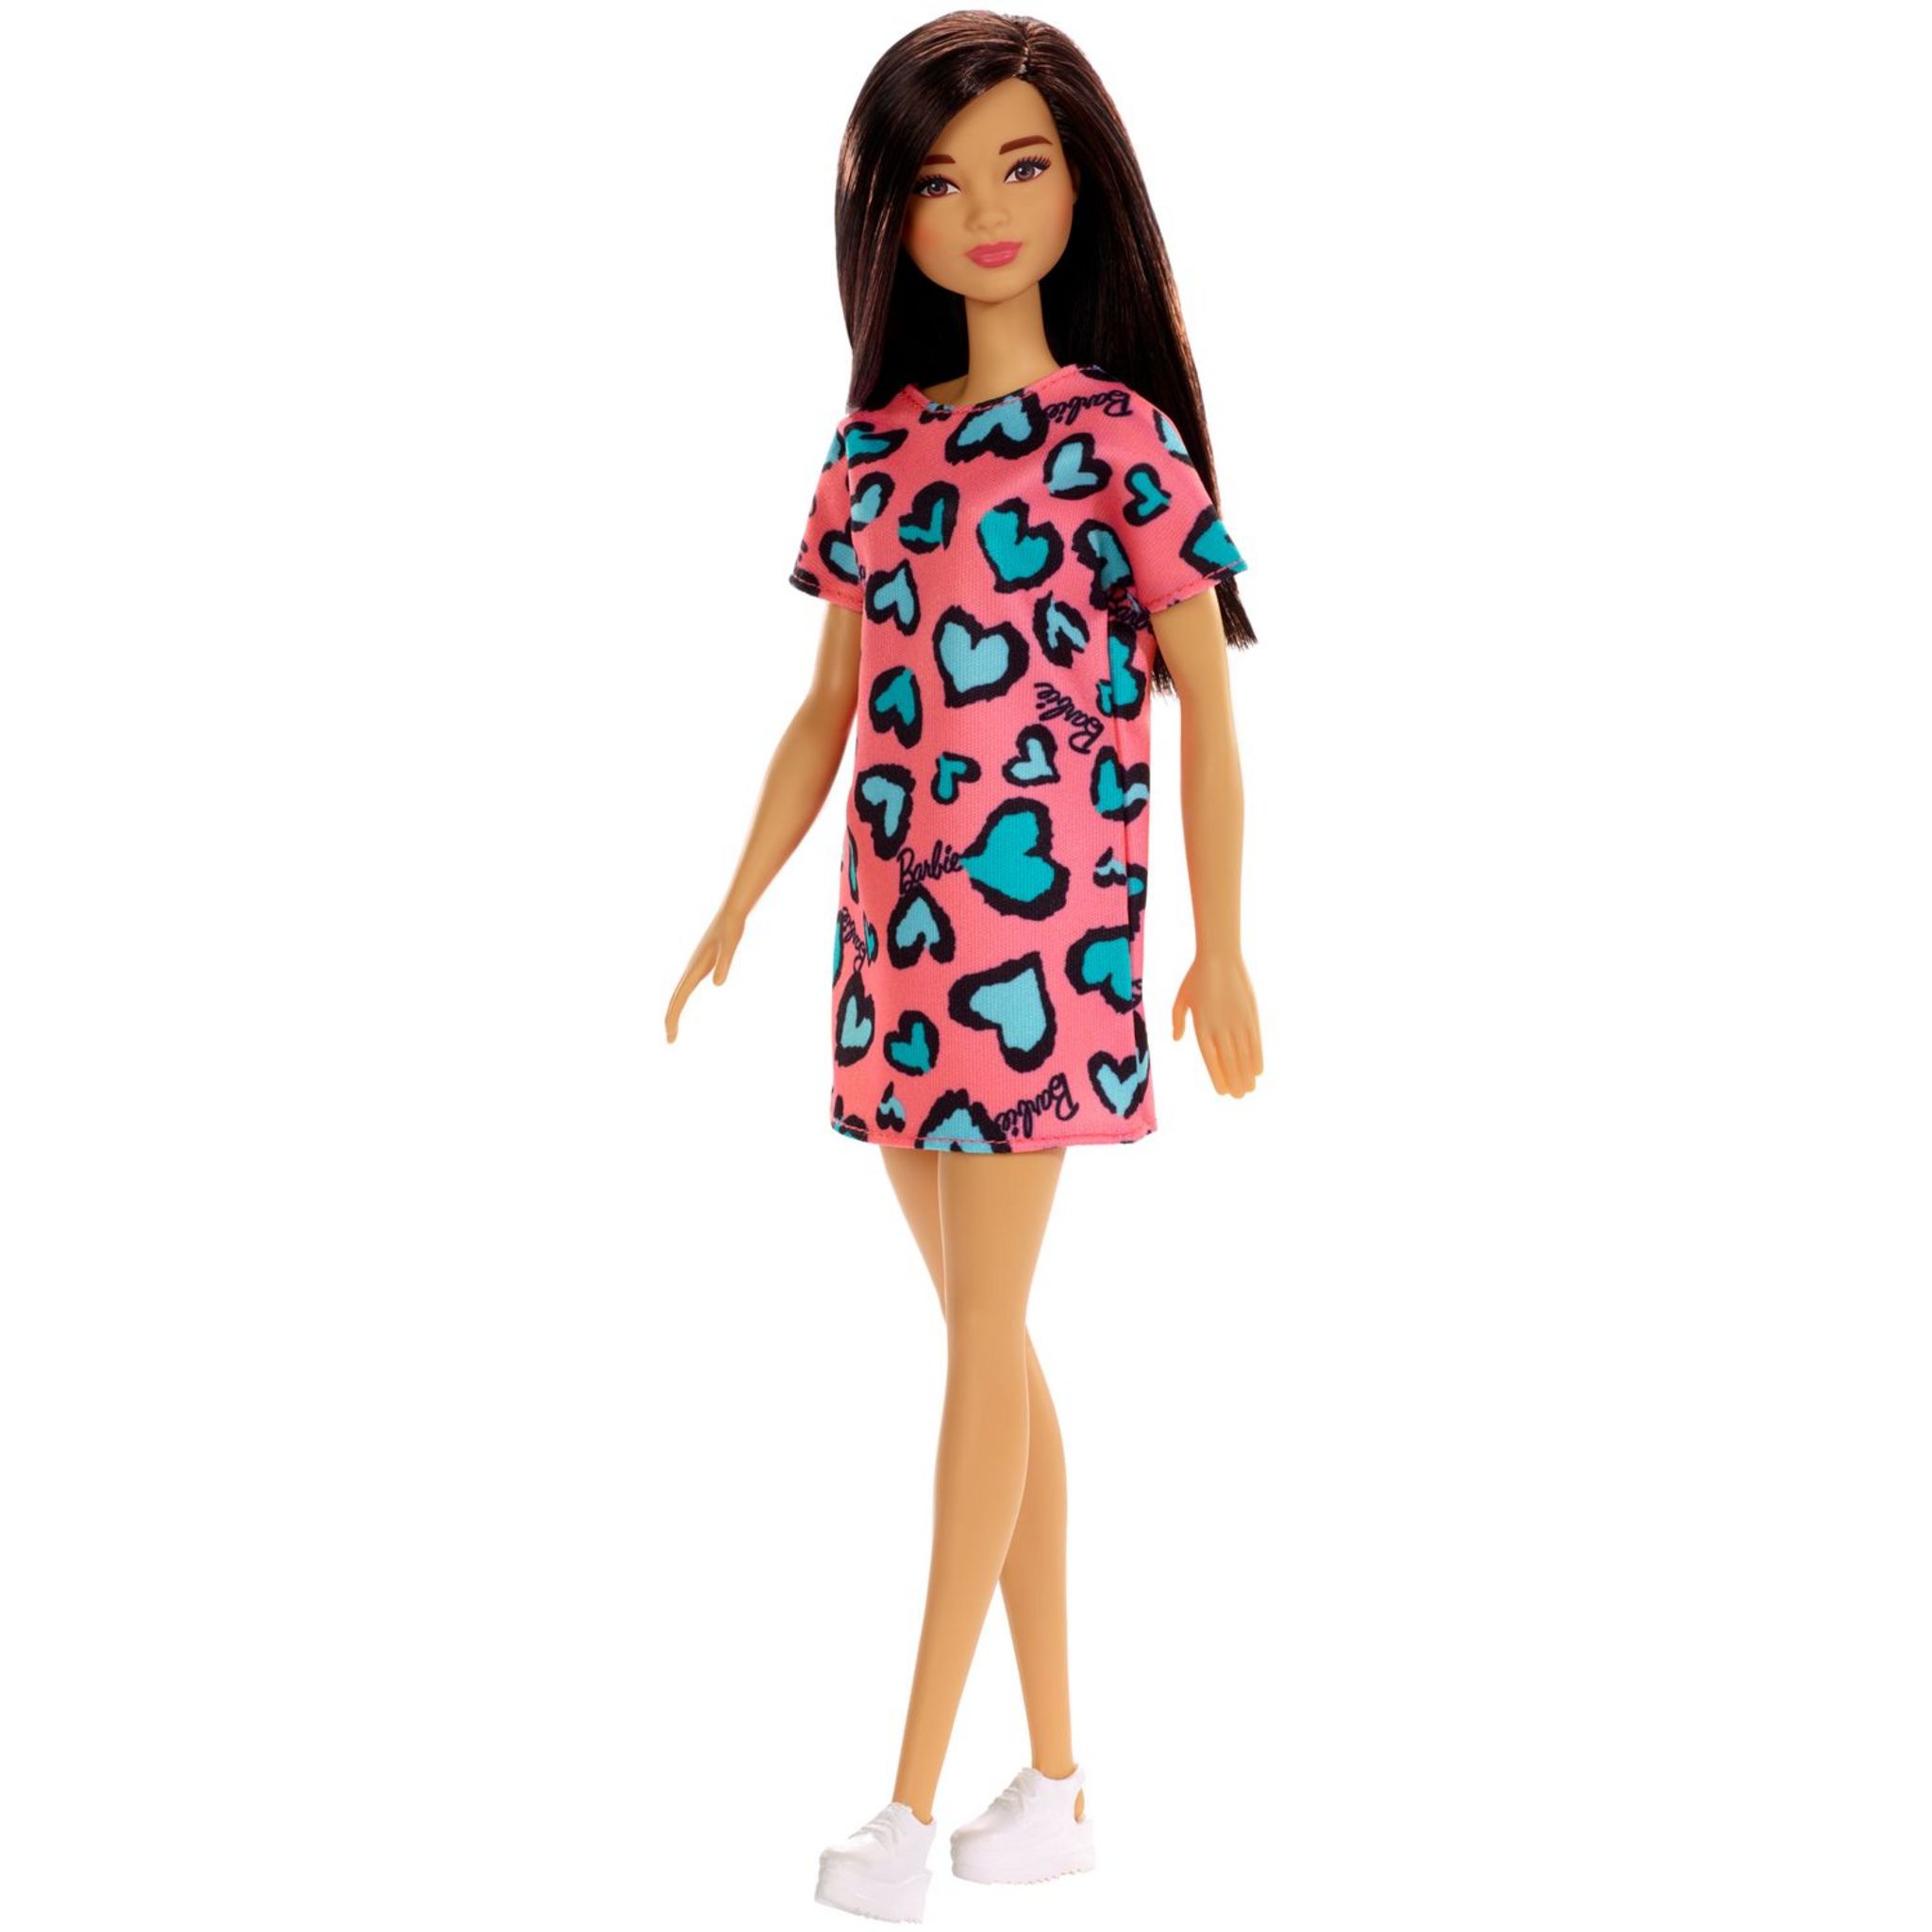 Promo Le Dressing Deluxe De Barbie chez Auchan